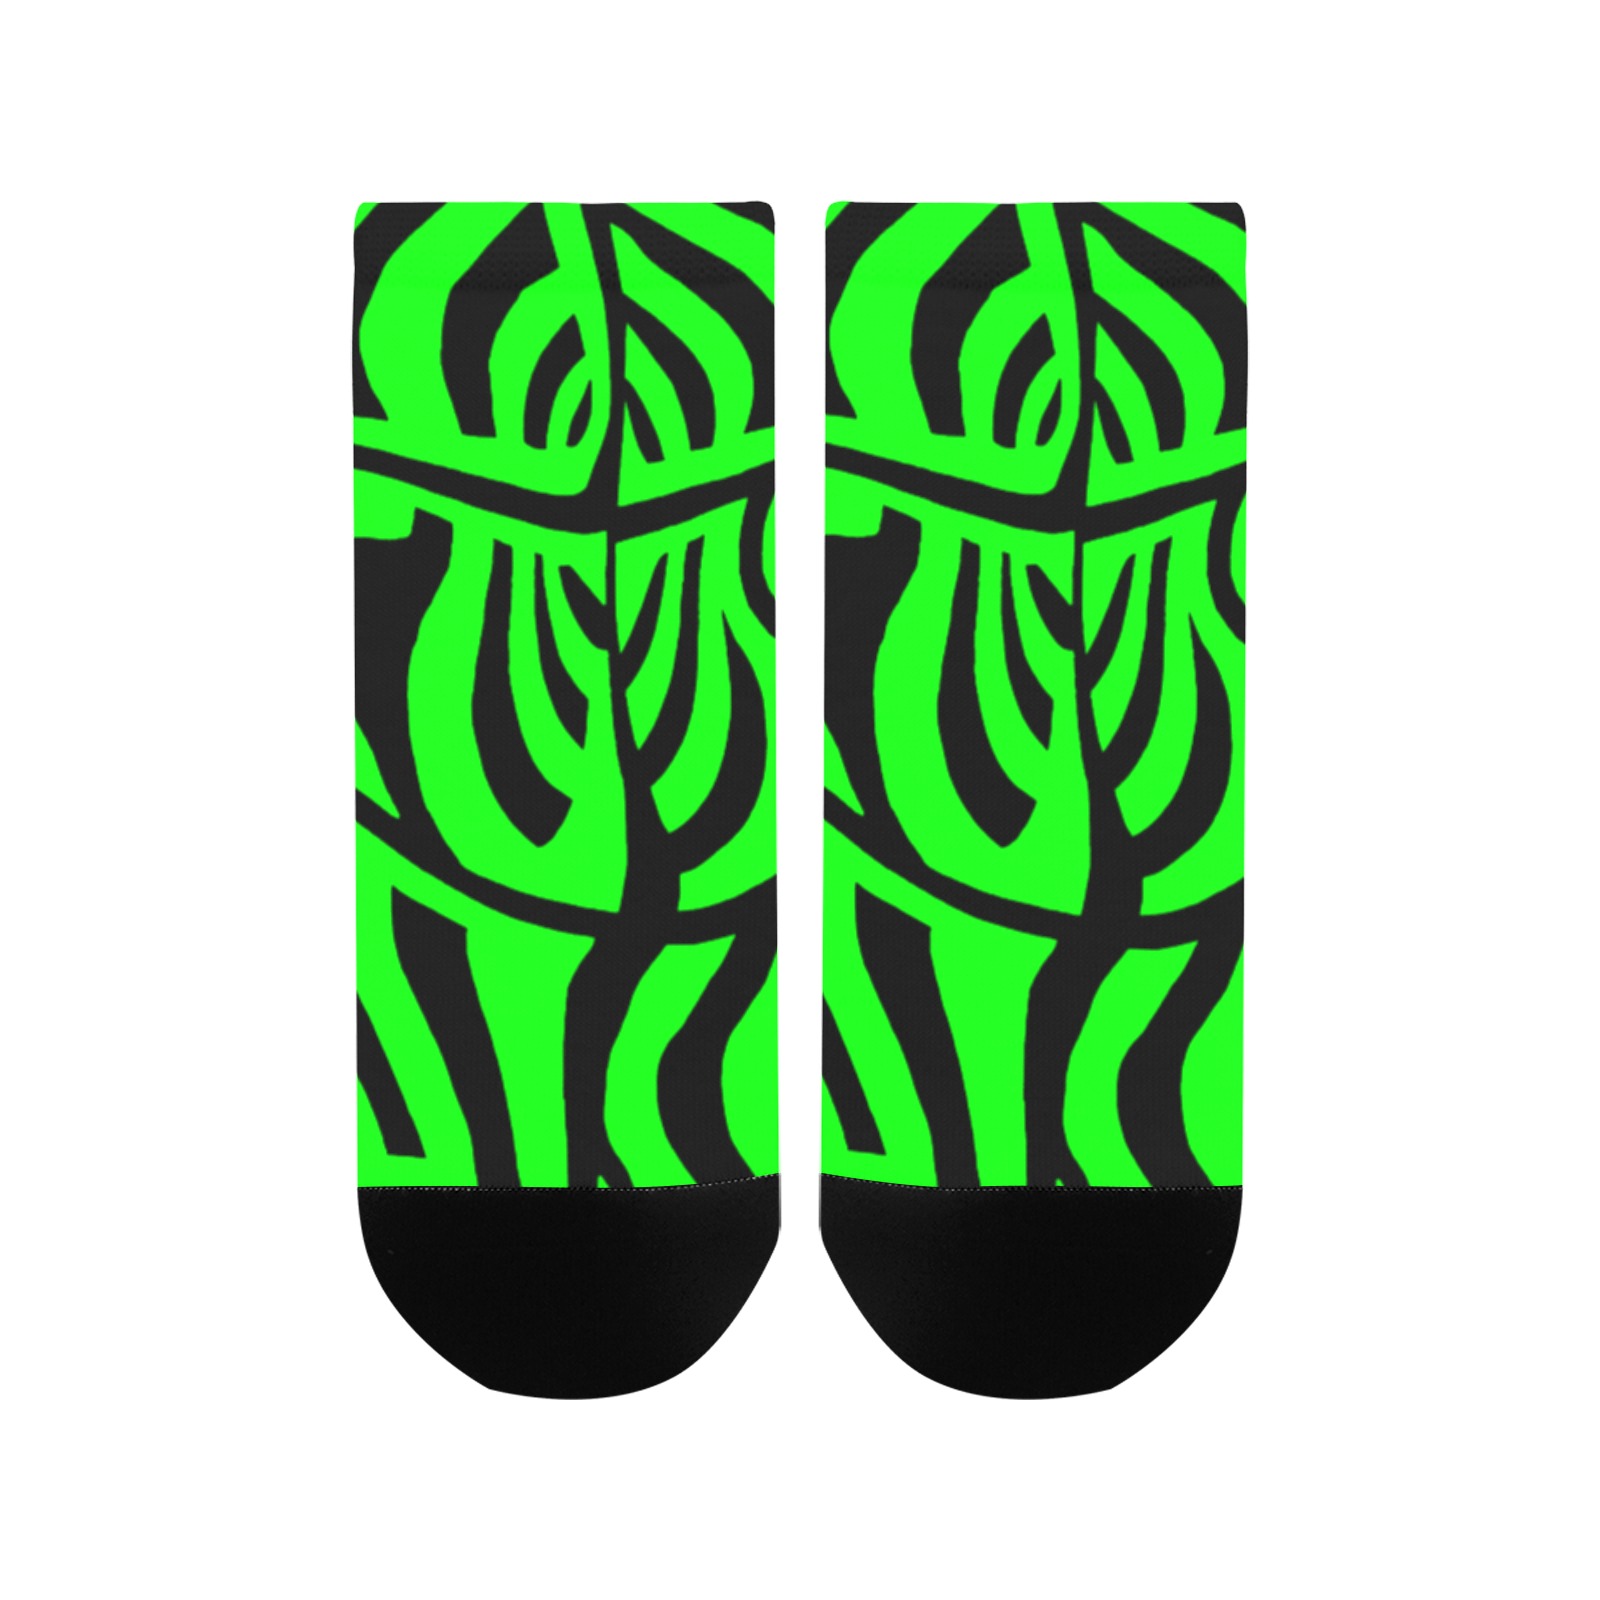 aaa green Women's Ankle Socks